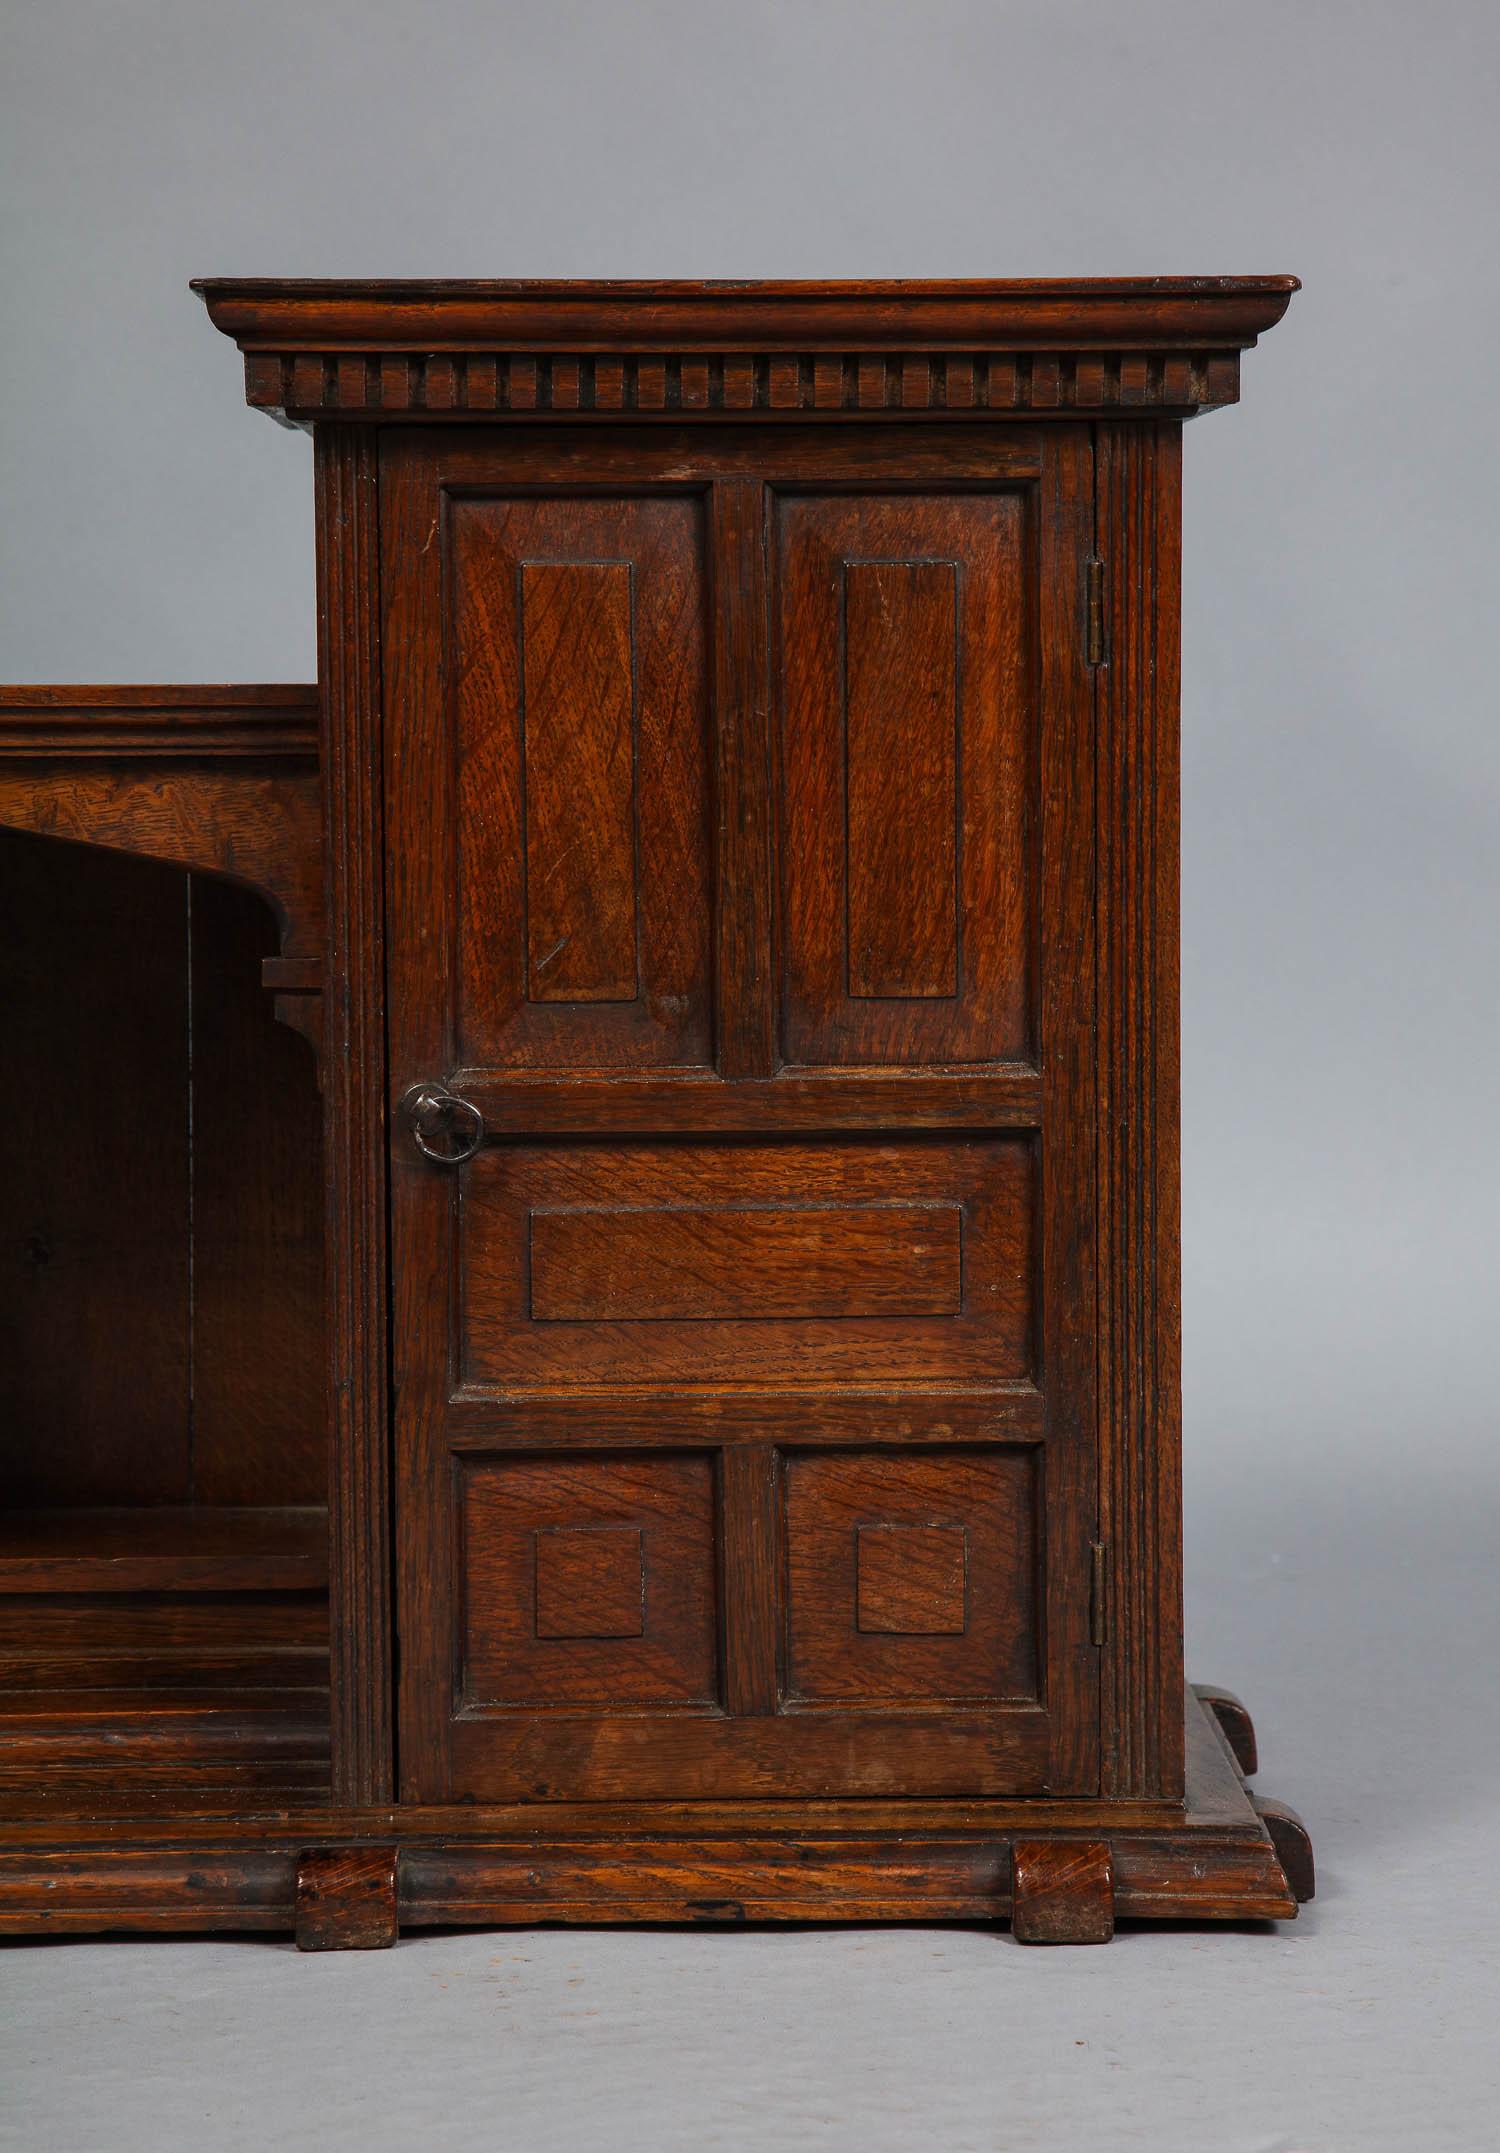 Superbe armoire suspendue ou de bureau en chêne anglais de la fin du XIXe siècle, comprenant deux armoires avec des portes à panneaux, une moulure à denticules et une étagère intérieure flanquant une niche ouverte avec un compartiment arqué, le tout